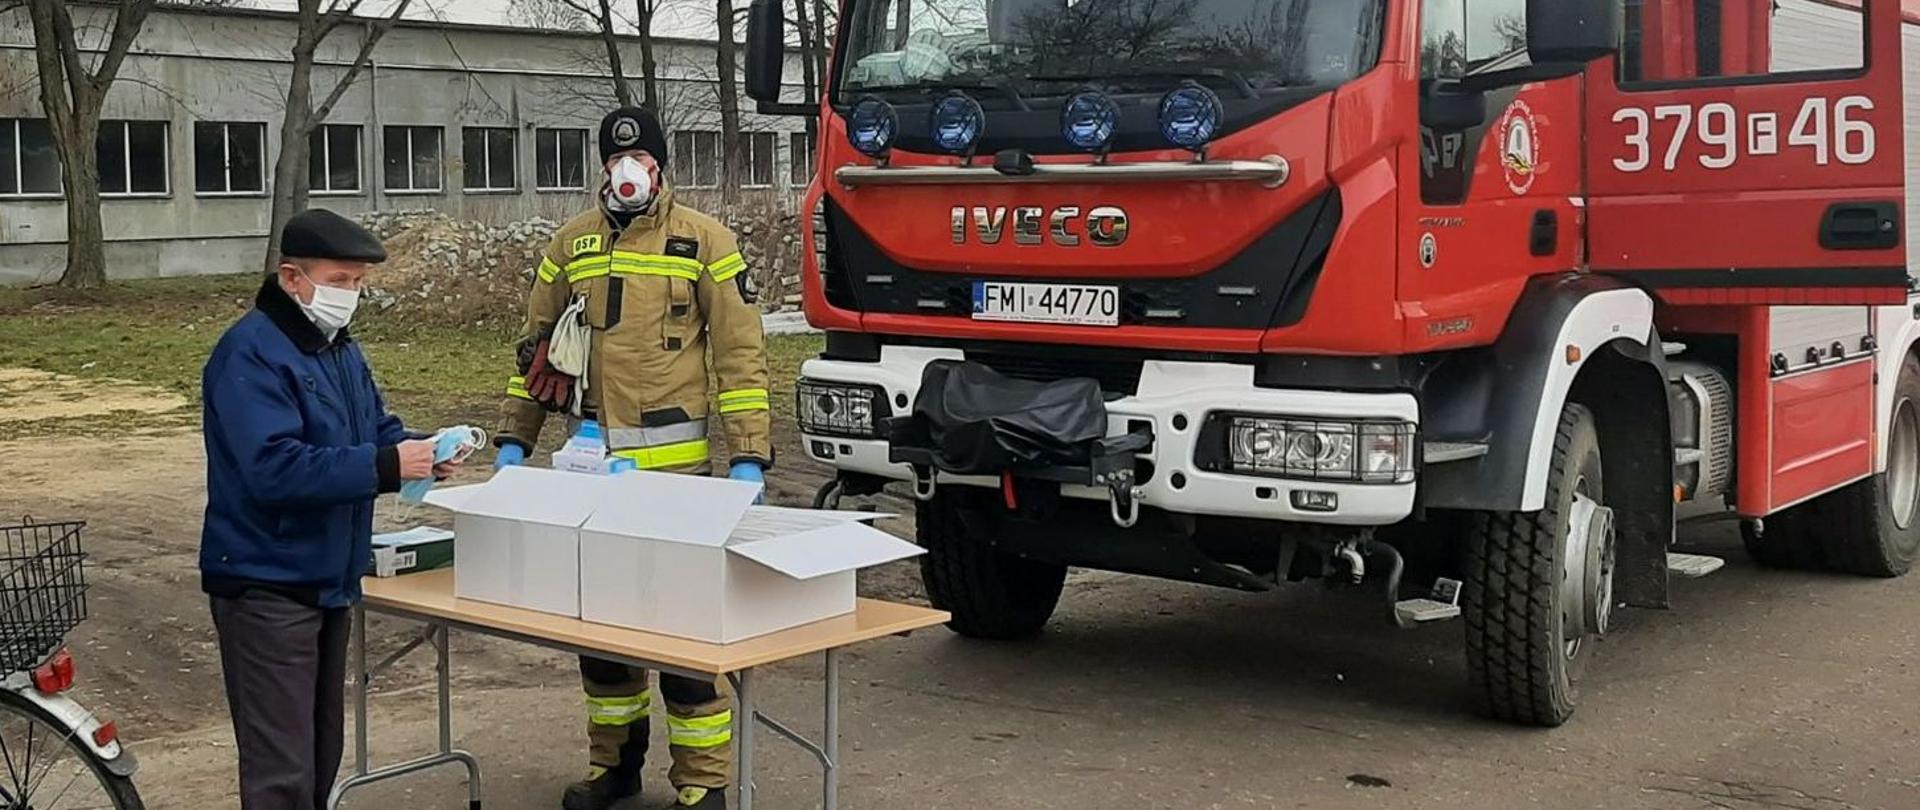 Zdjęcie przedstawia mieszkańca Skwierzyny odbierającego maseczki od strażaka OSP na punkcie wydawczym zorganizowanym w Skwierzynie. Obok stoi strażak, za nim pojazd pożarniczy.